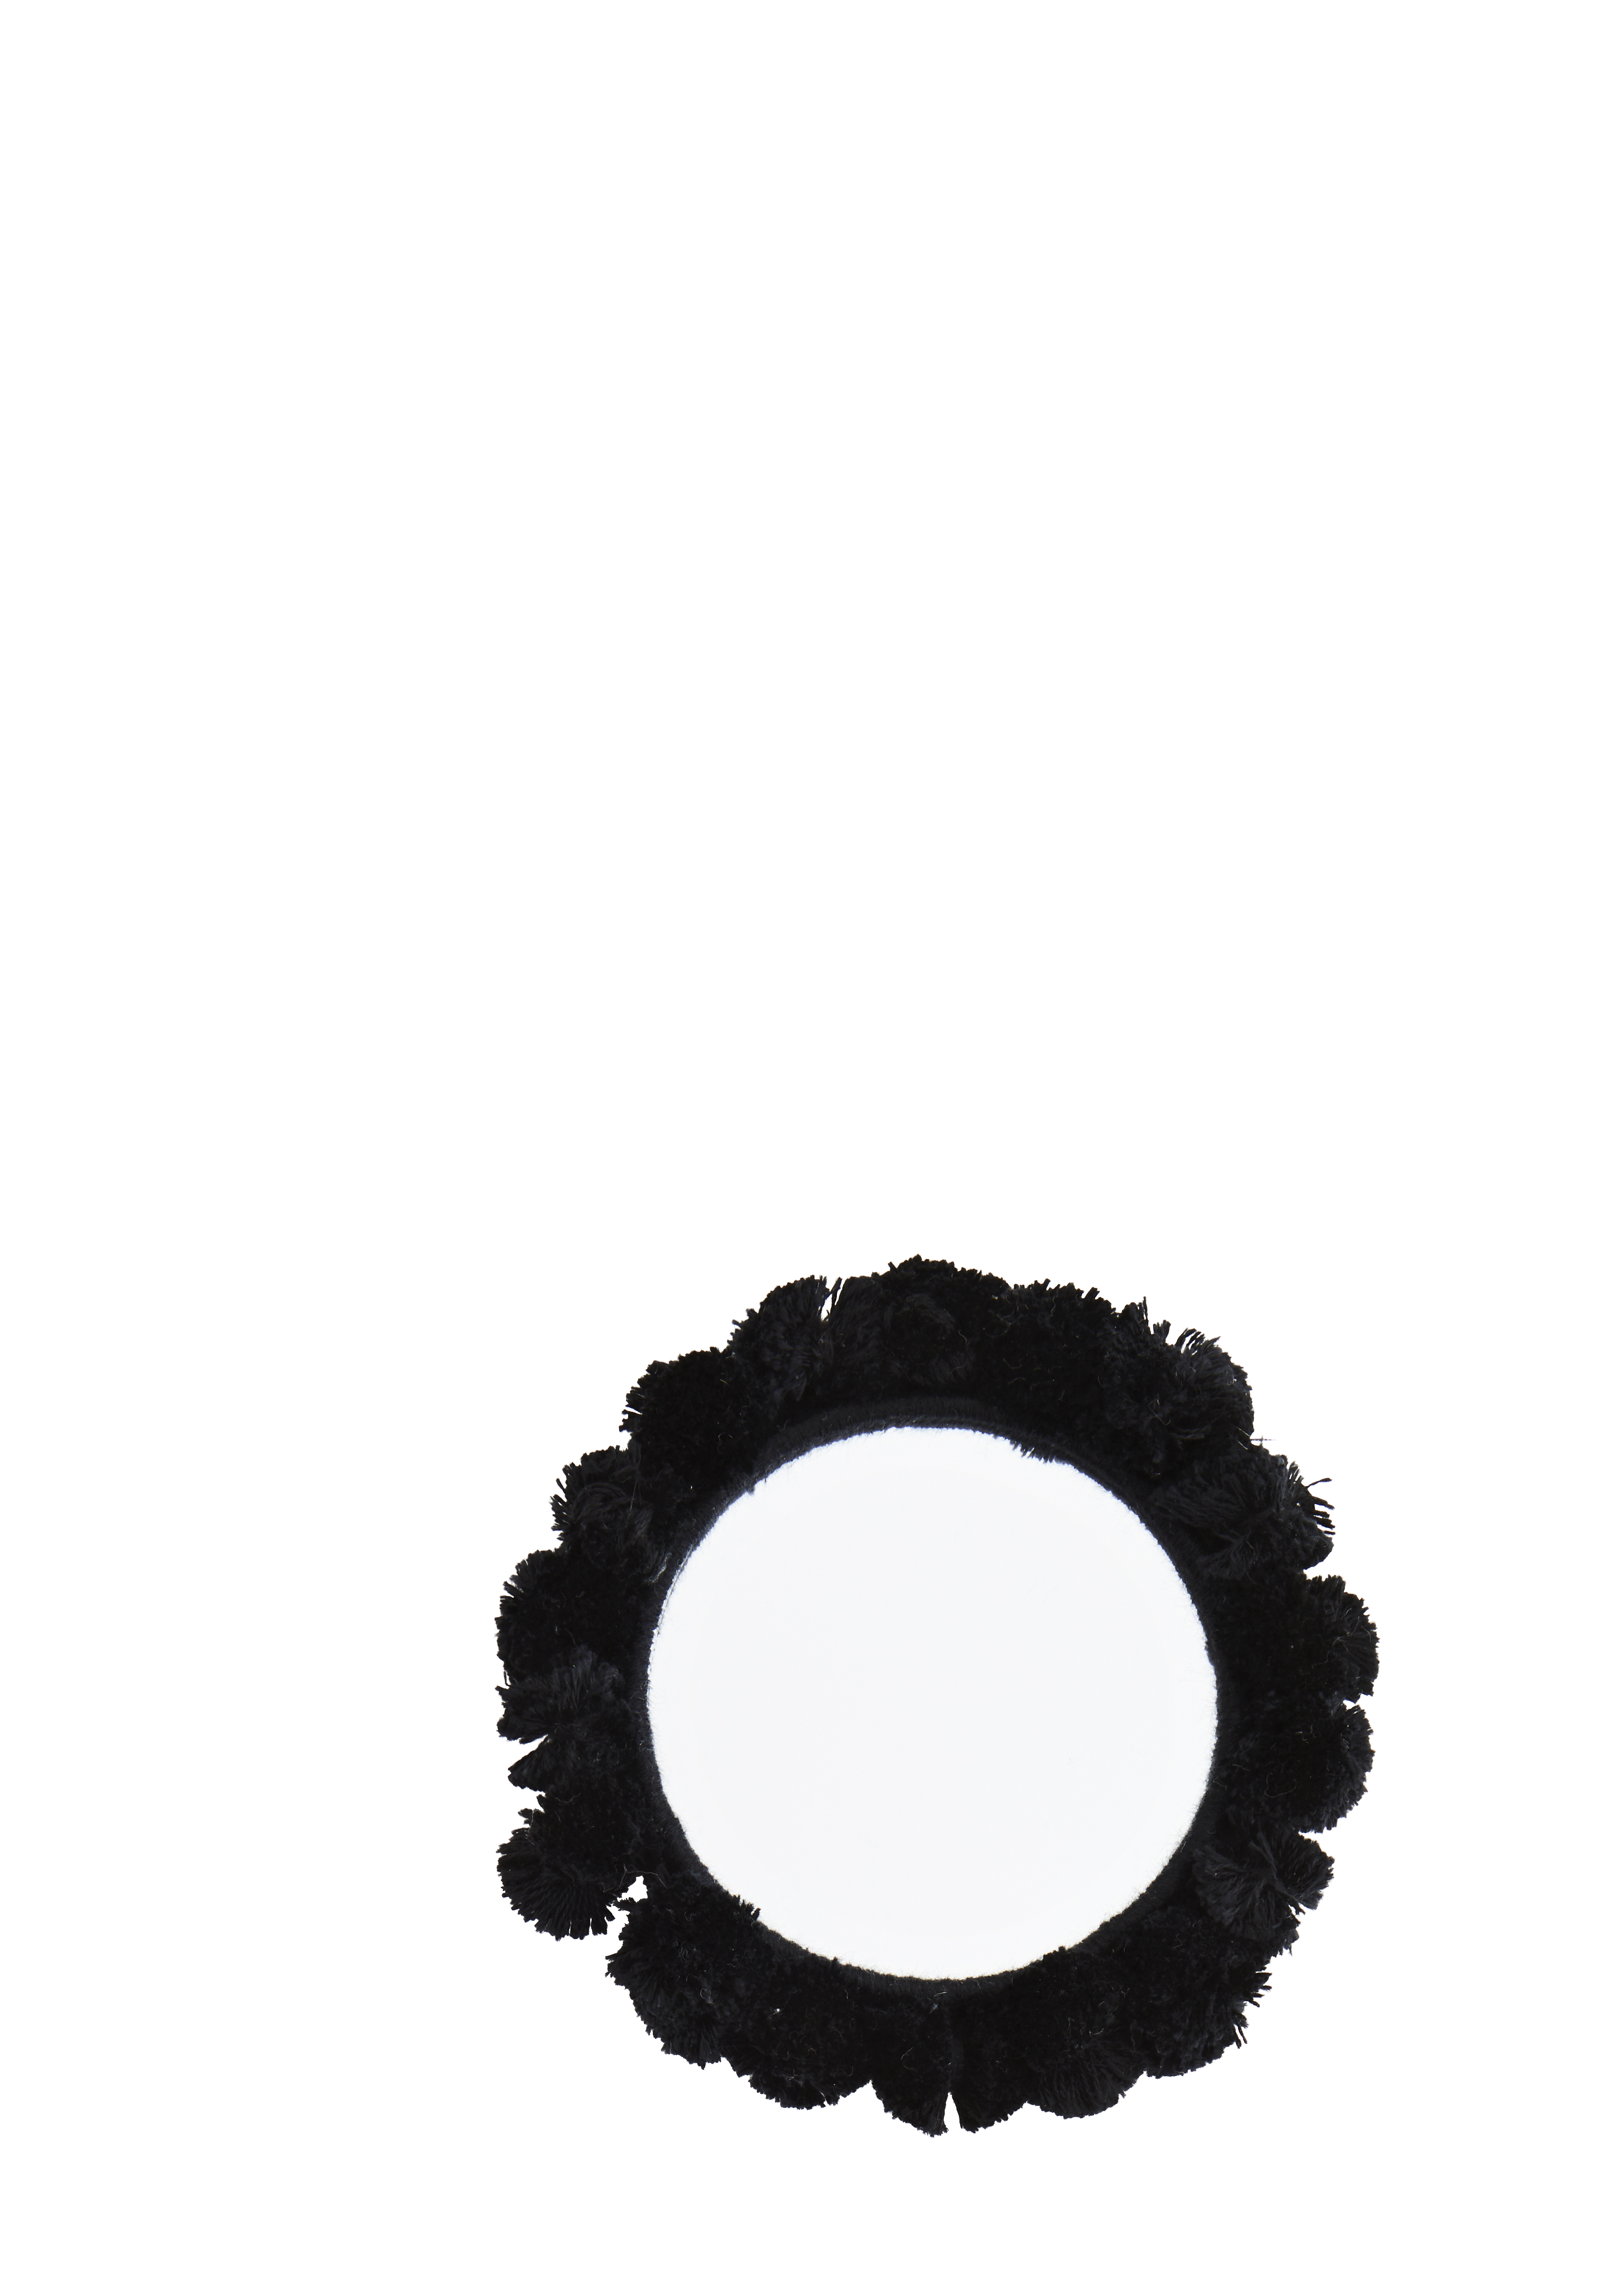 Taschenspiegel mit Tasseln (schwarz)